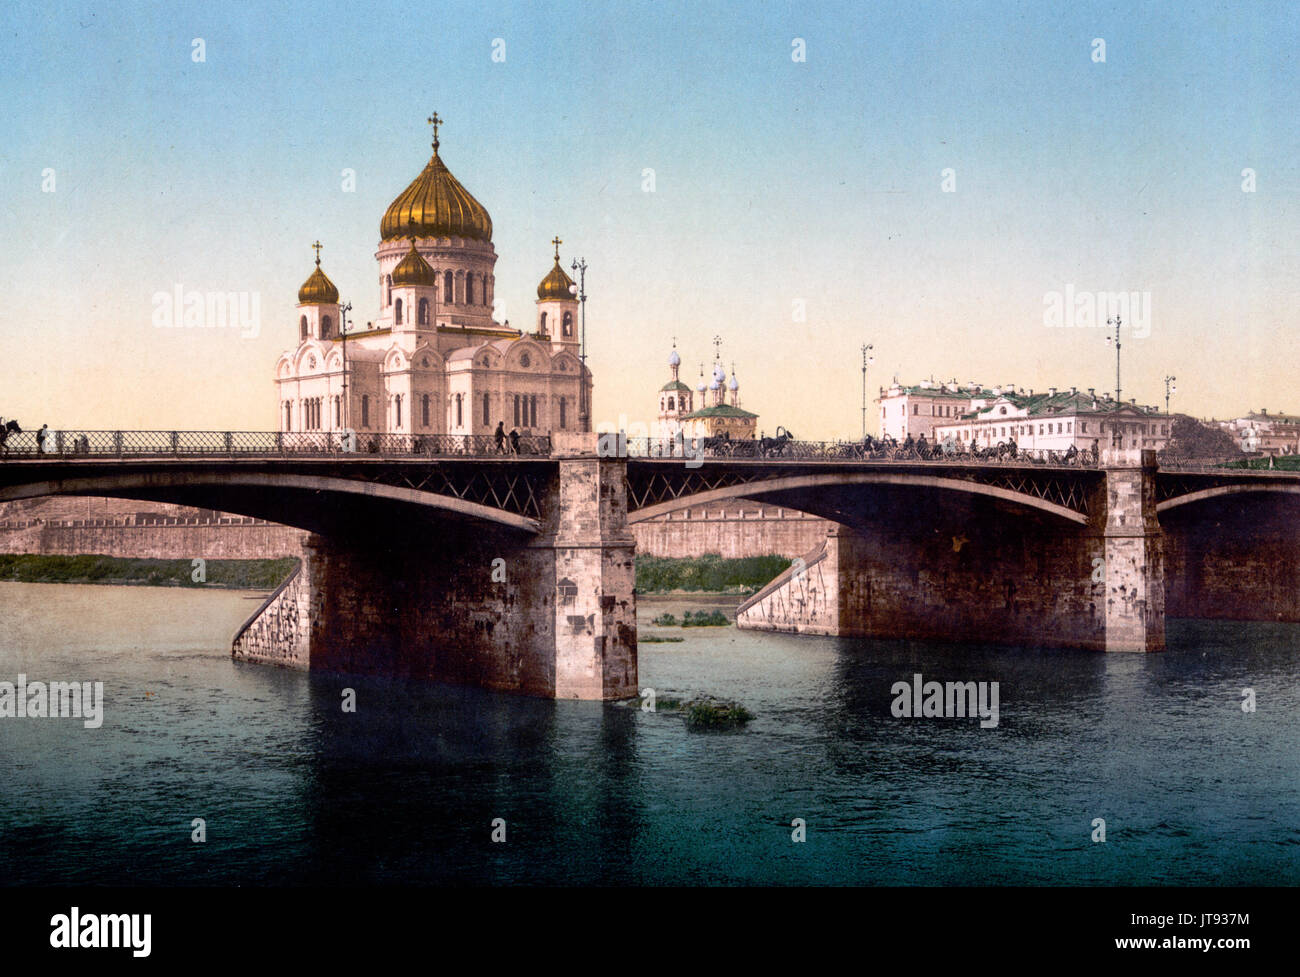 Die Kathedrale von St. Saviour, (Christus der Erlöser), und die kamennyj, (d. h. Die meisten kamennyi), Brücke, Moskau, Russland, ca. 1890 Stockfoto